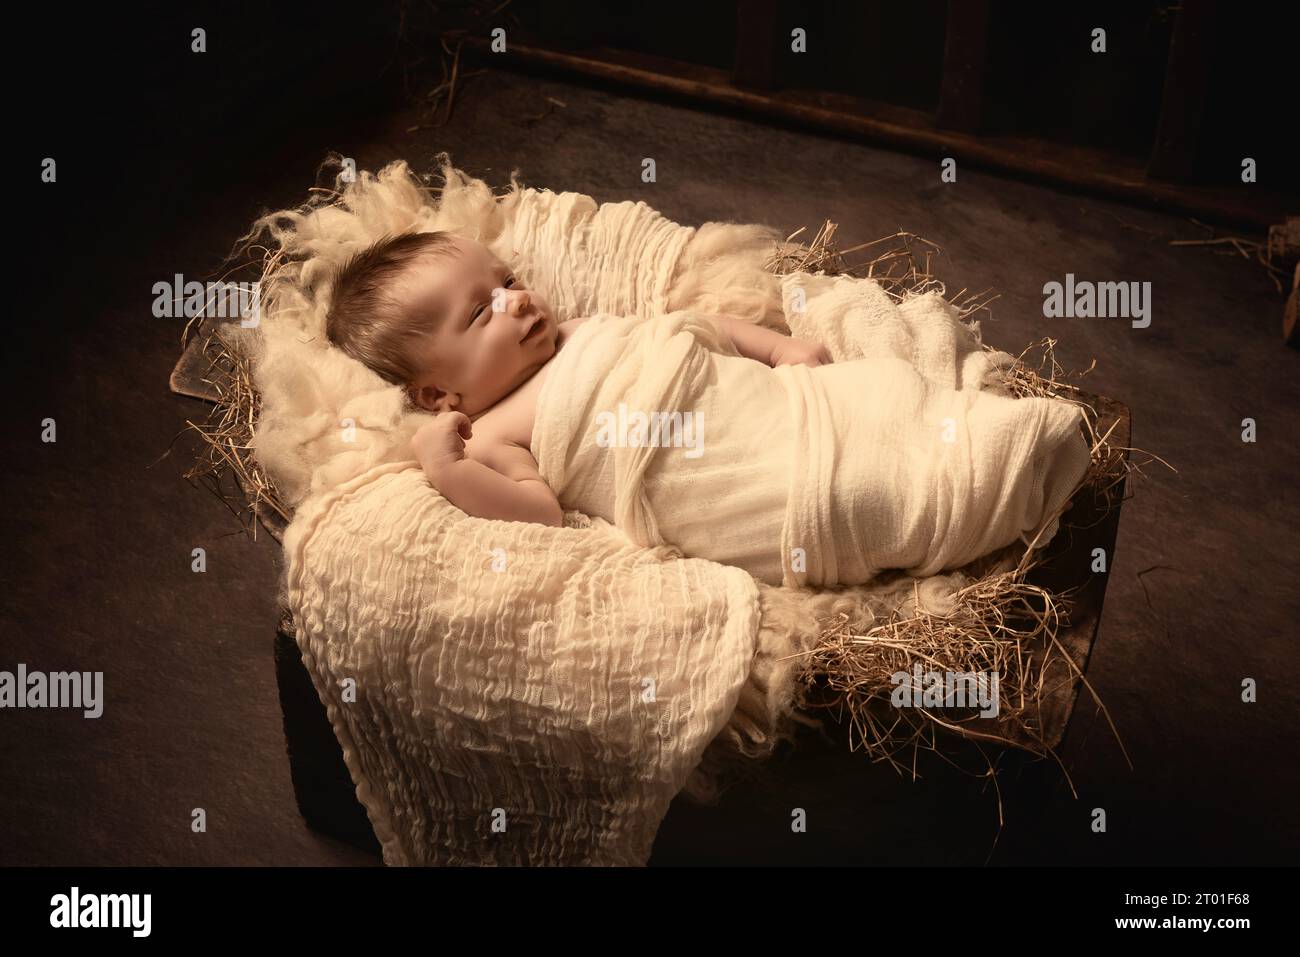 Scène de fête de Noël en direct de bébé garçon de 8 jours dormant dans une mangeoire Banque D'Images